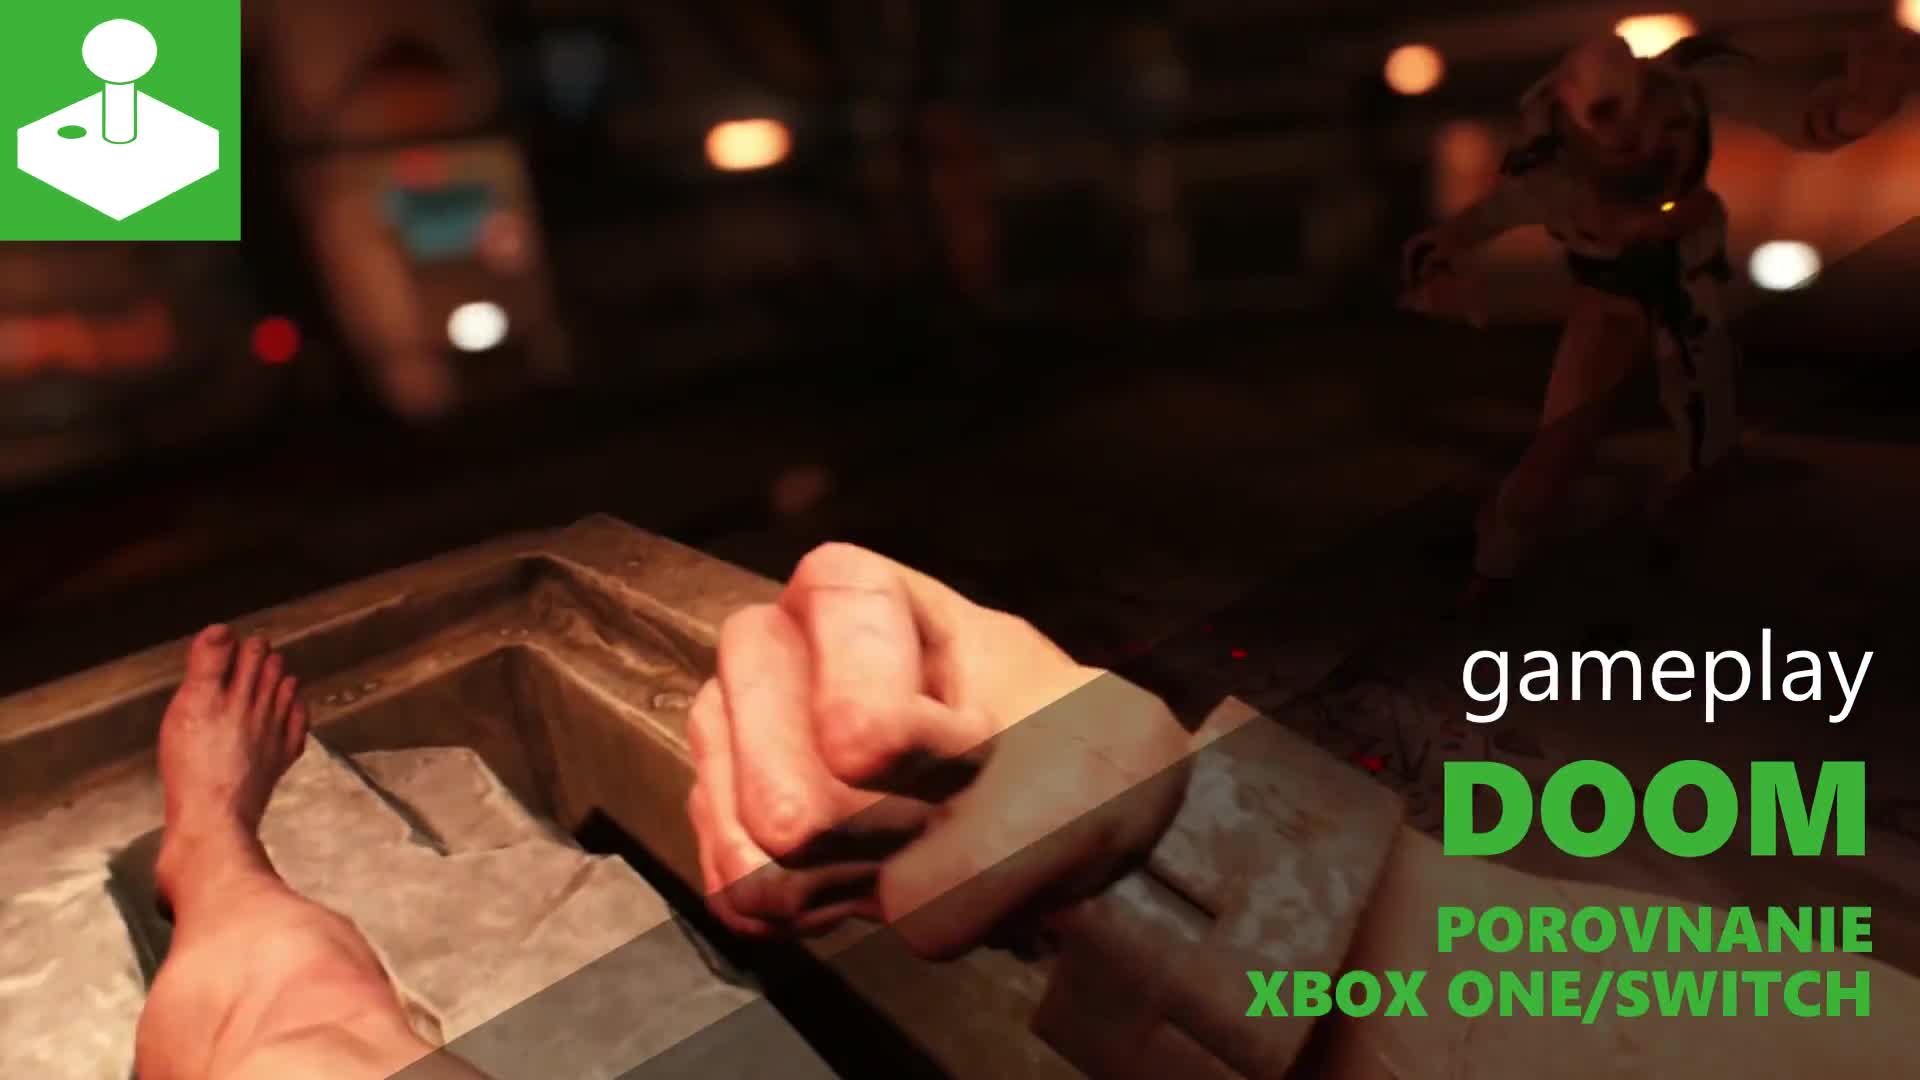 DOOM - Xbox One / Switch - porovnanie